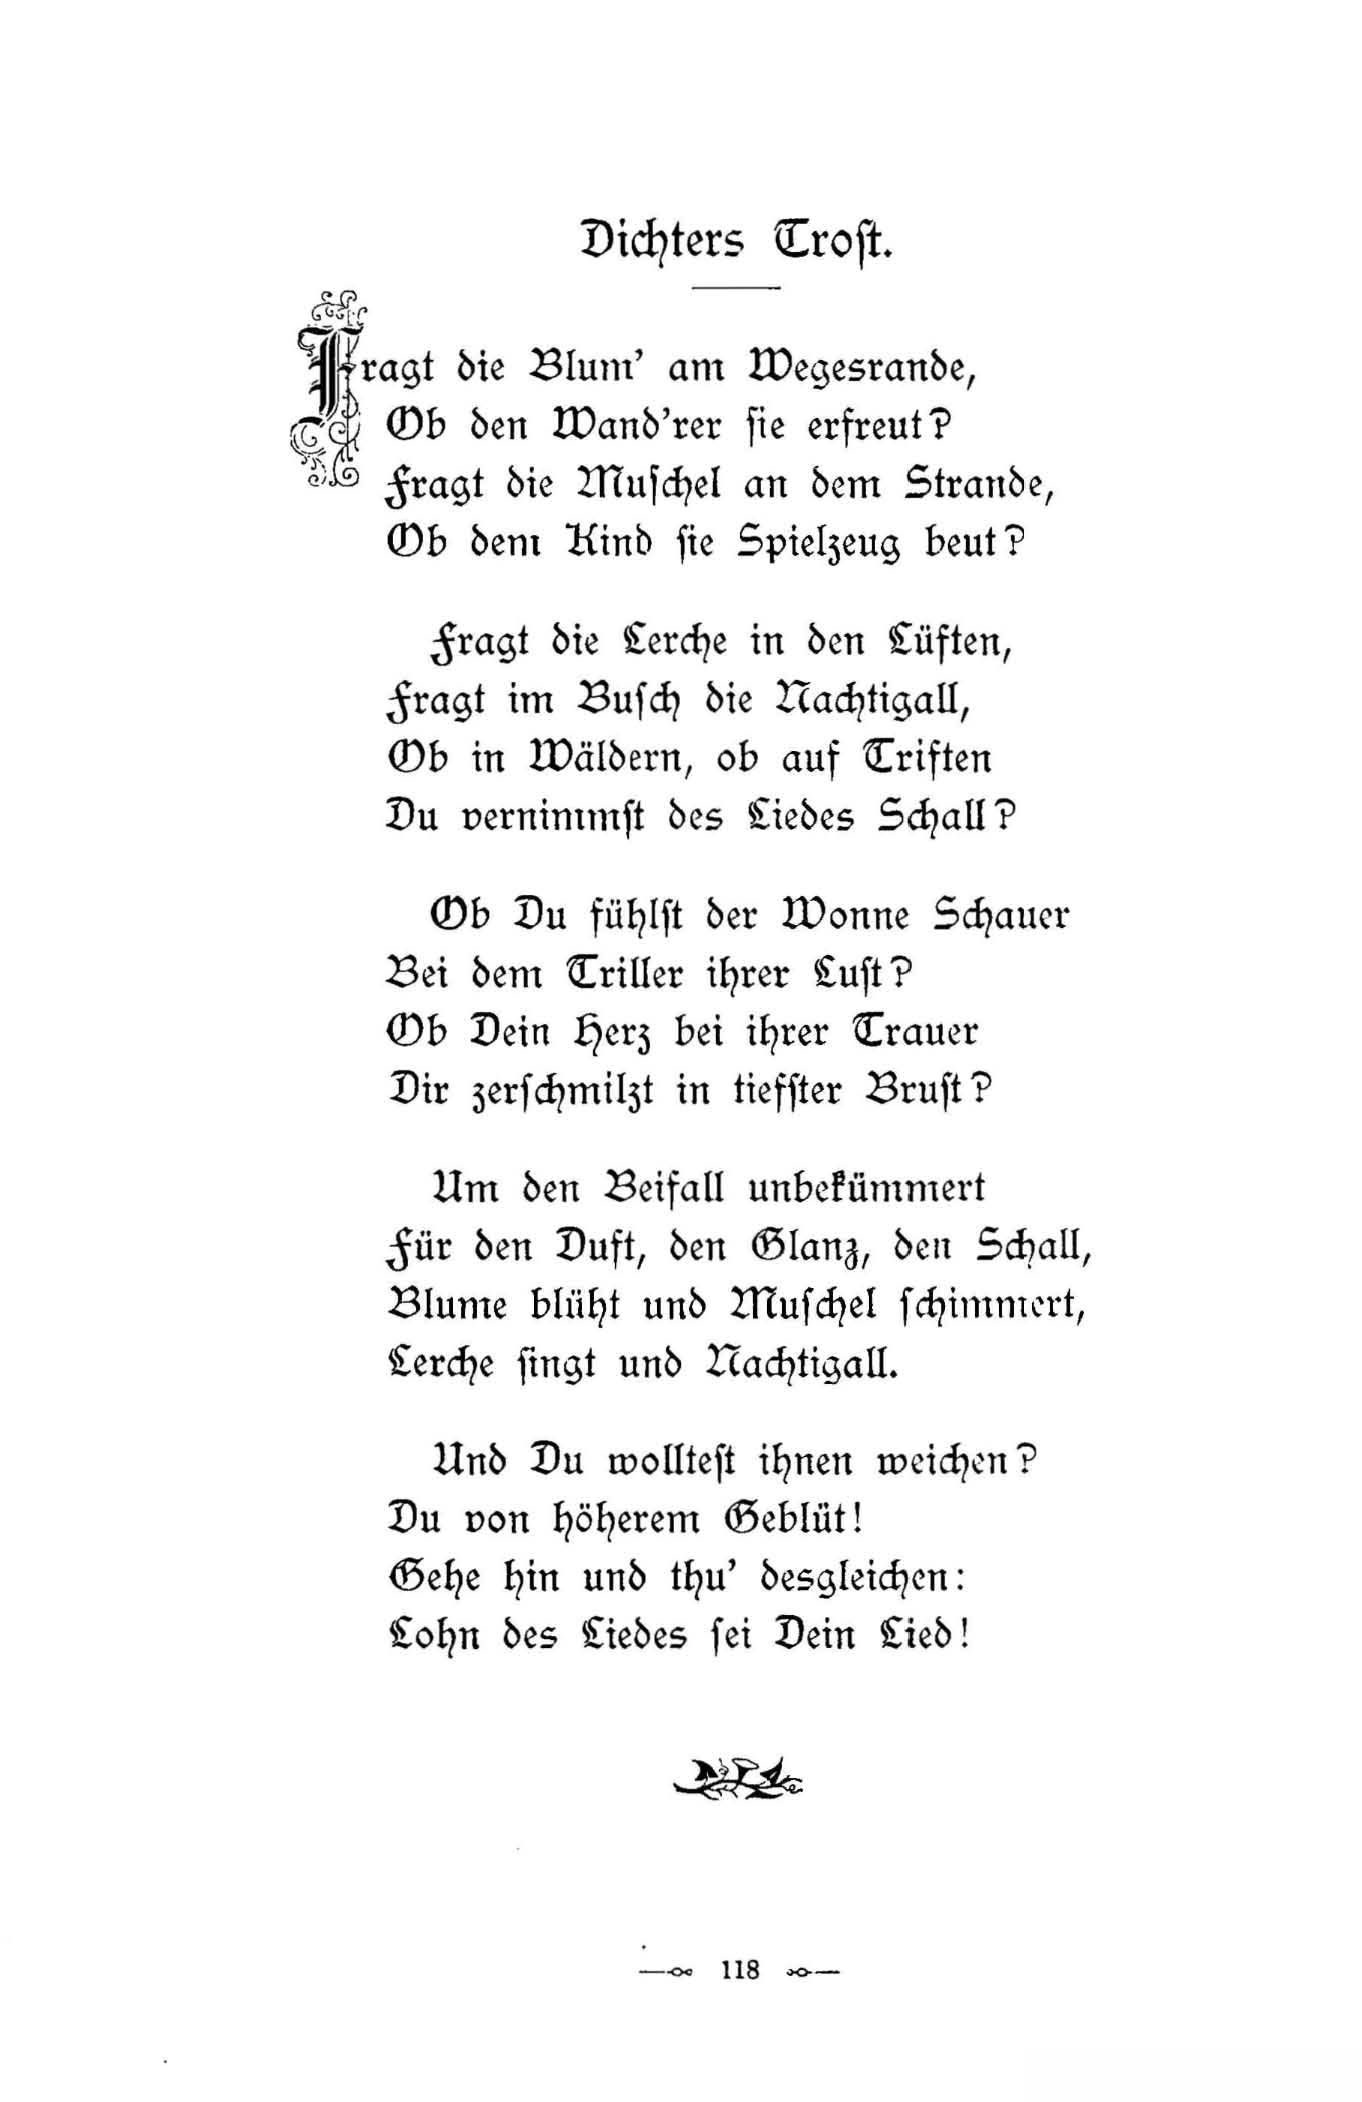 Dichters Trost (1896) | 1. (118) Haupttext